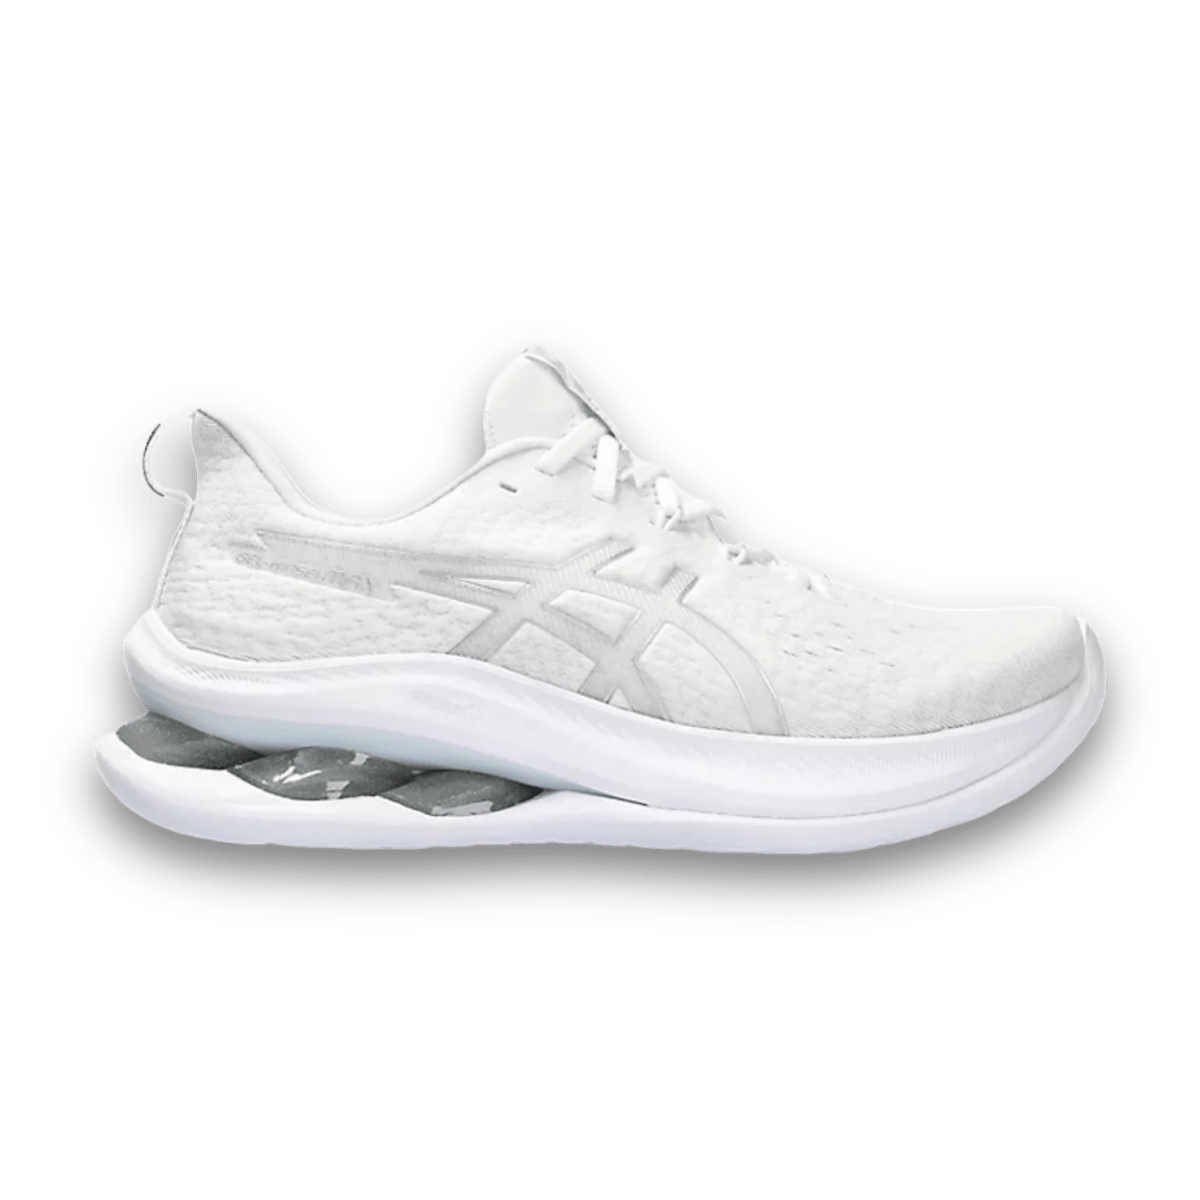 Asics Gel-Kinsei Max White Pure Silver - Women - Low Sneaker - Jawns on Fire Sneakers & Streetwear